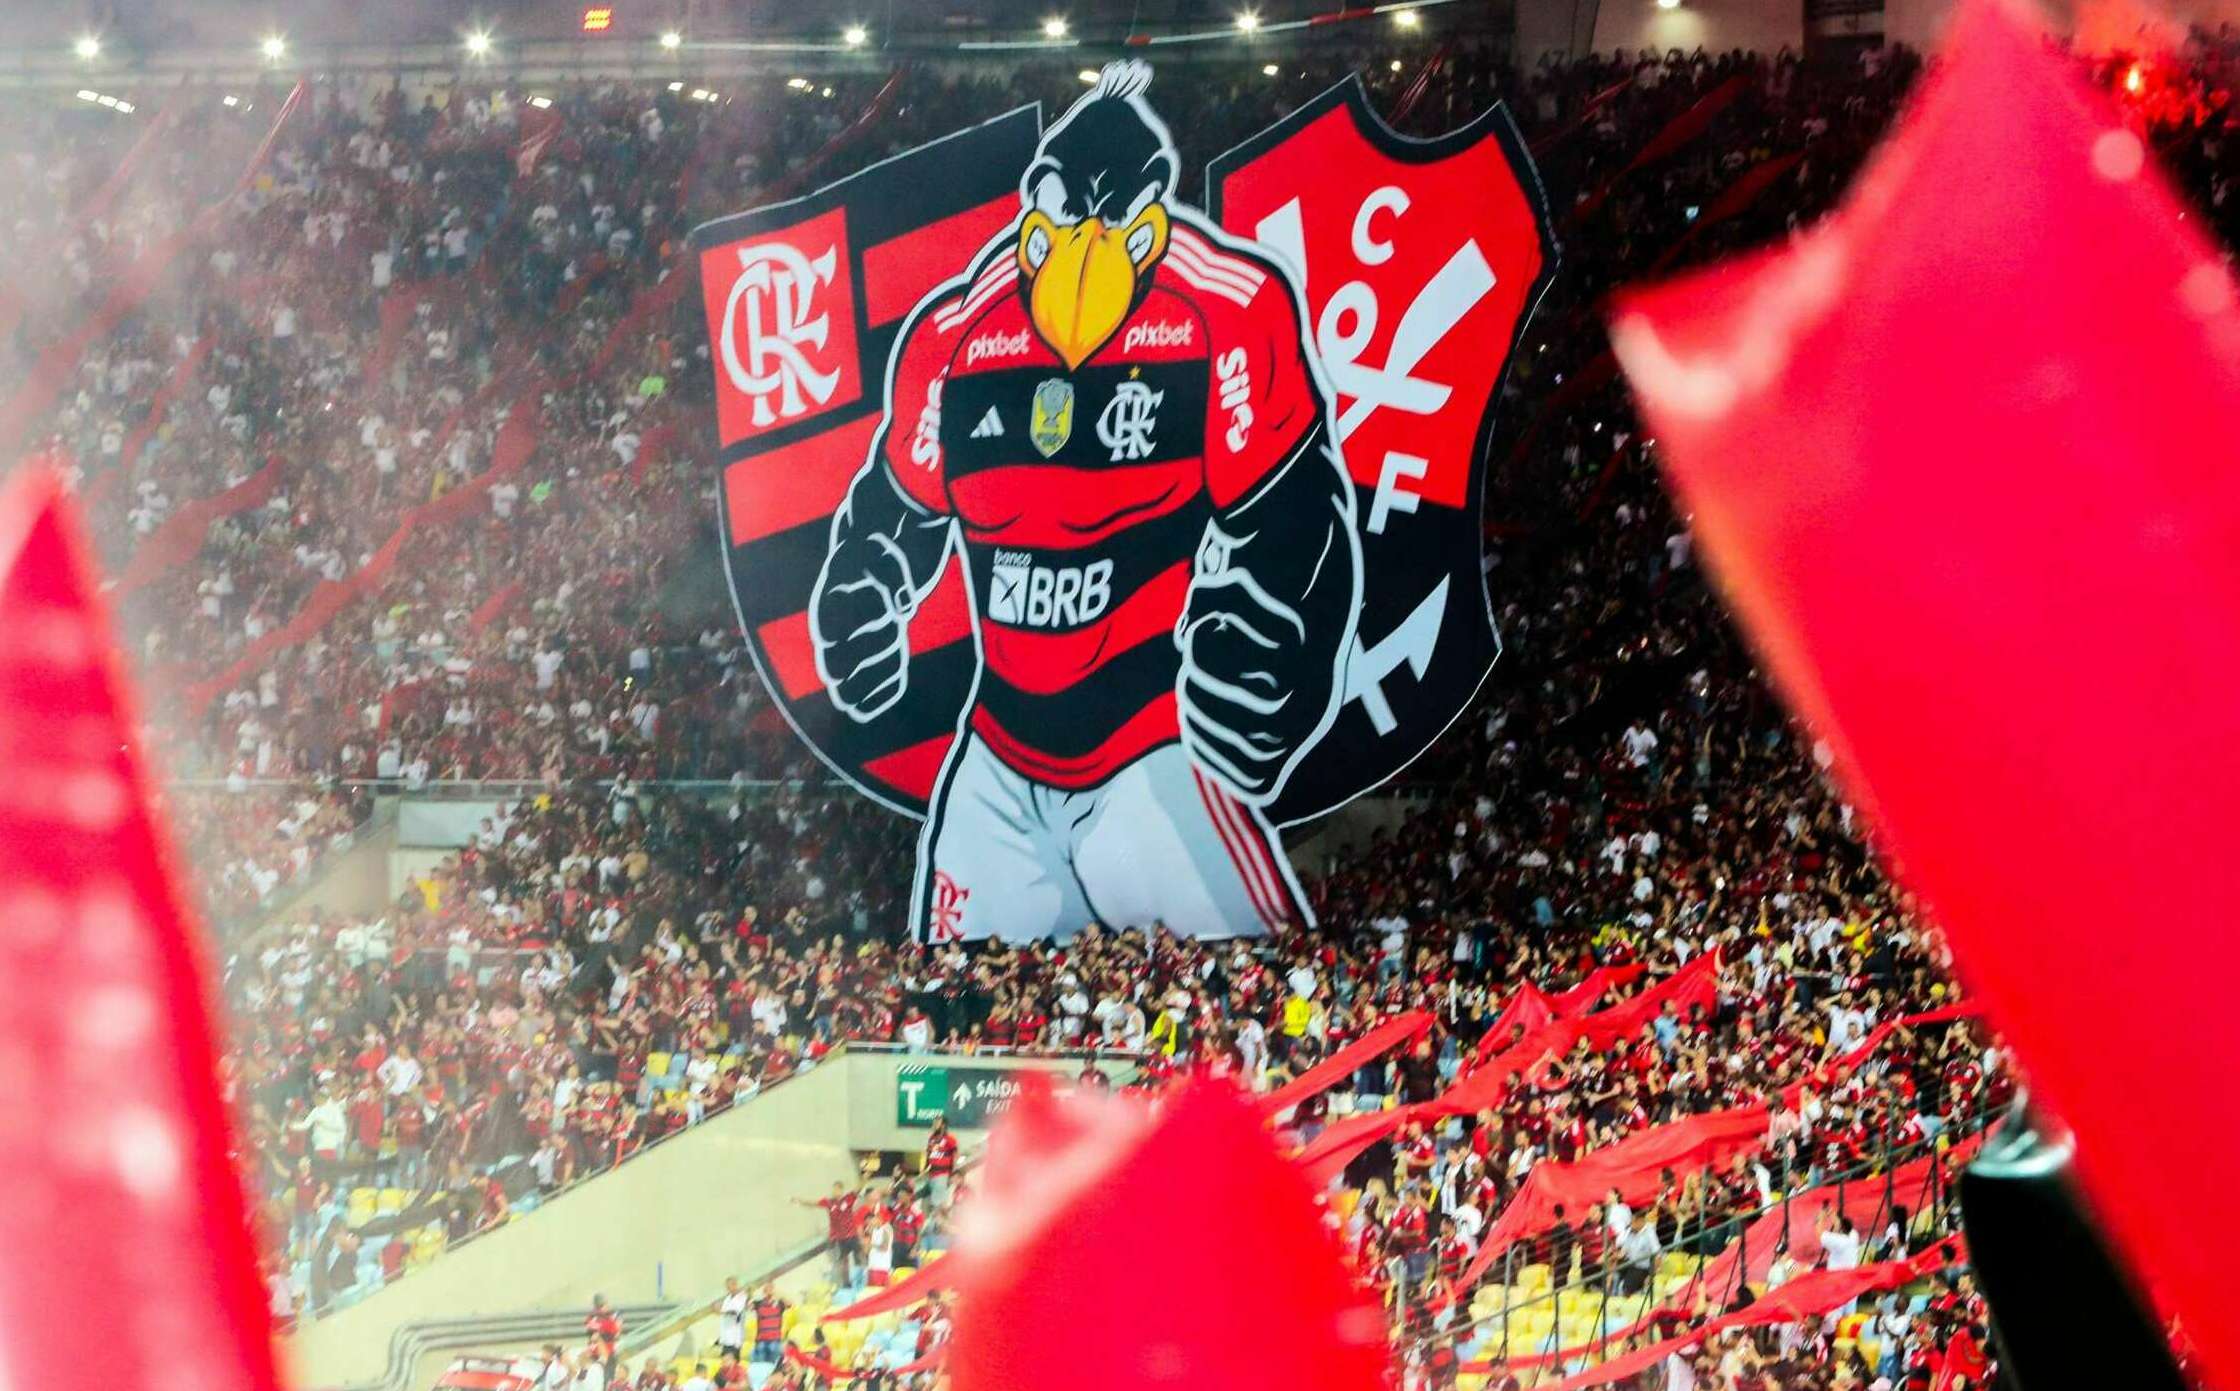 Copa do Brasil: A expectativa hoje de São Paulo e Flamengo